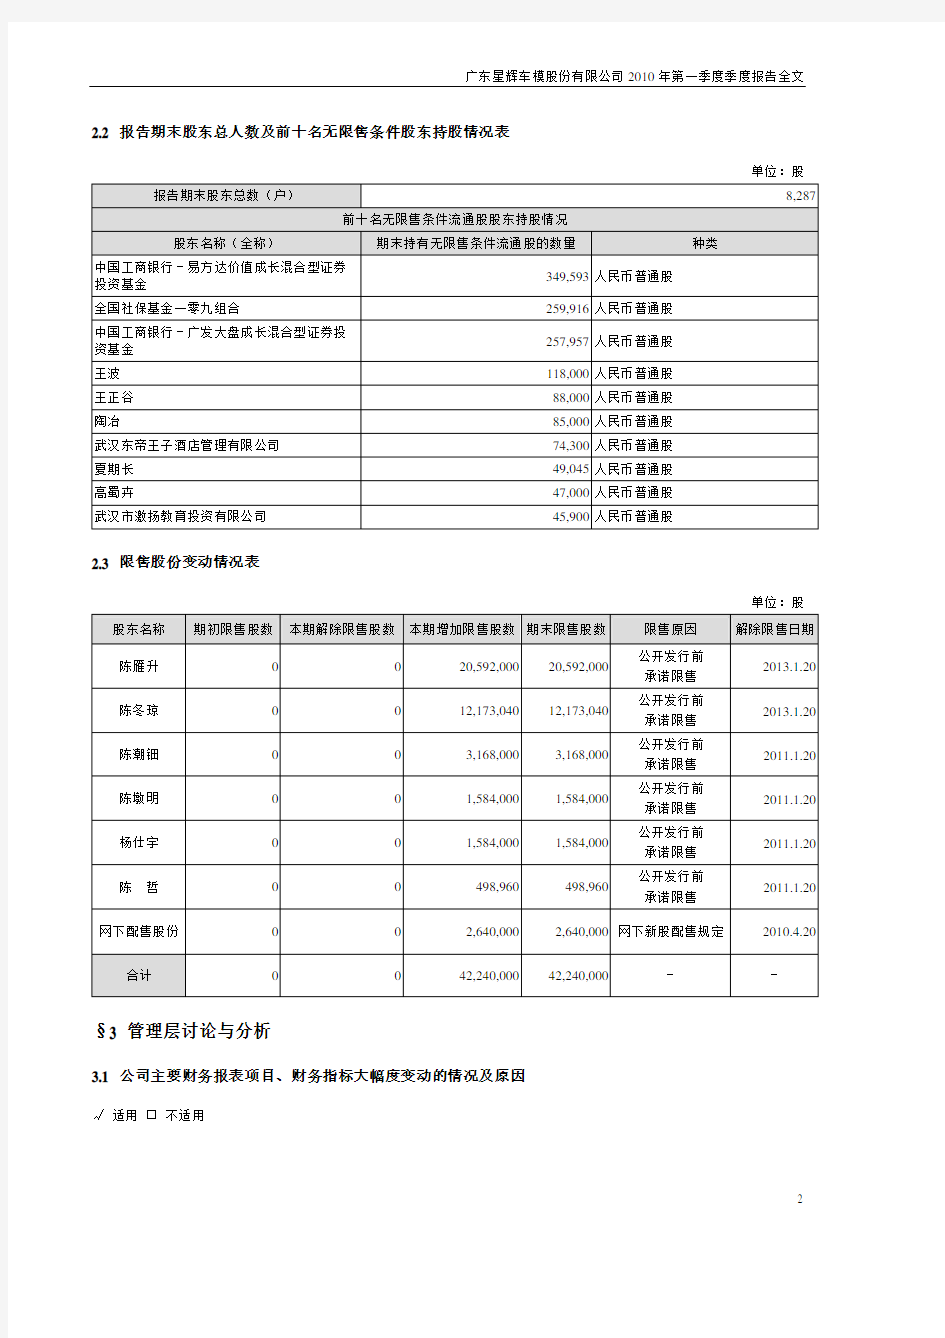 (仅供参考)广东星辉车模股份有限公司2010年第一季度季度报告全文